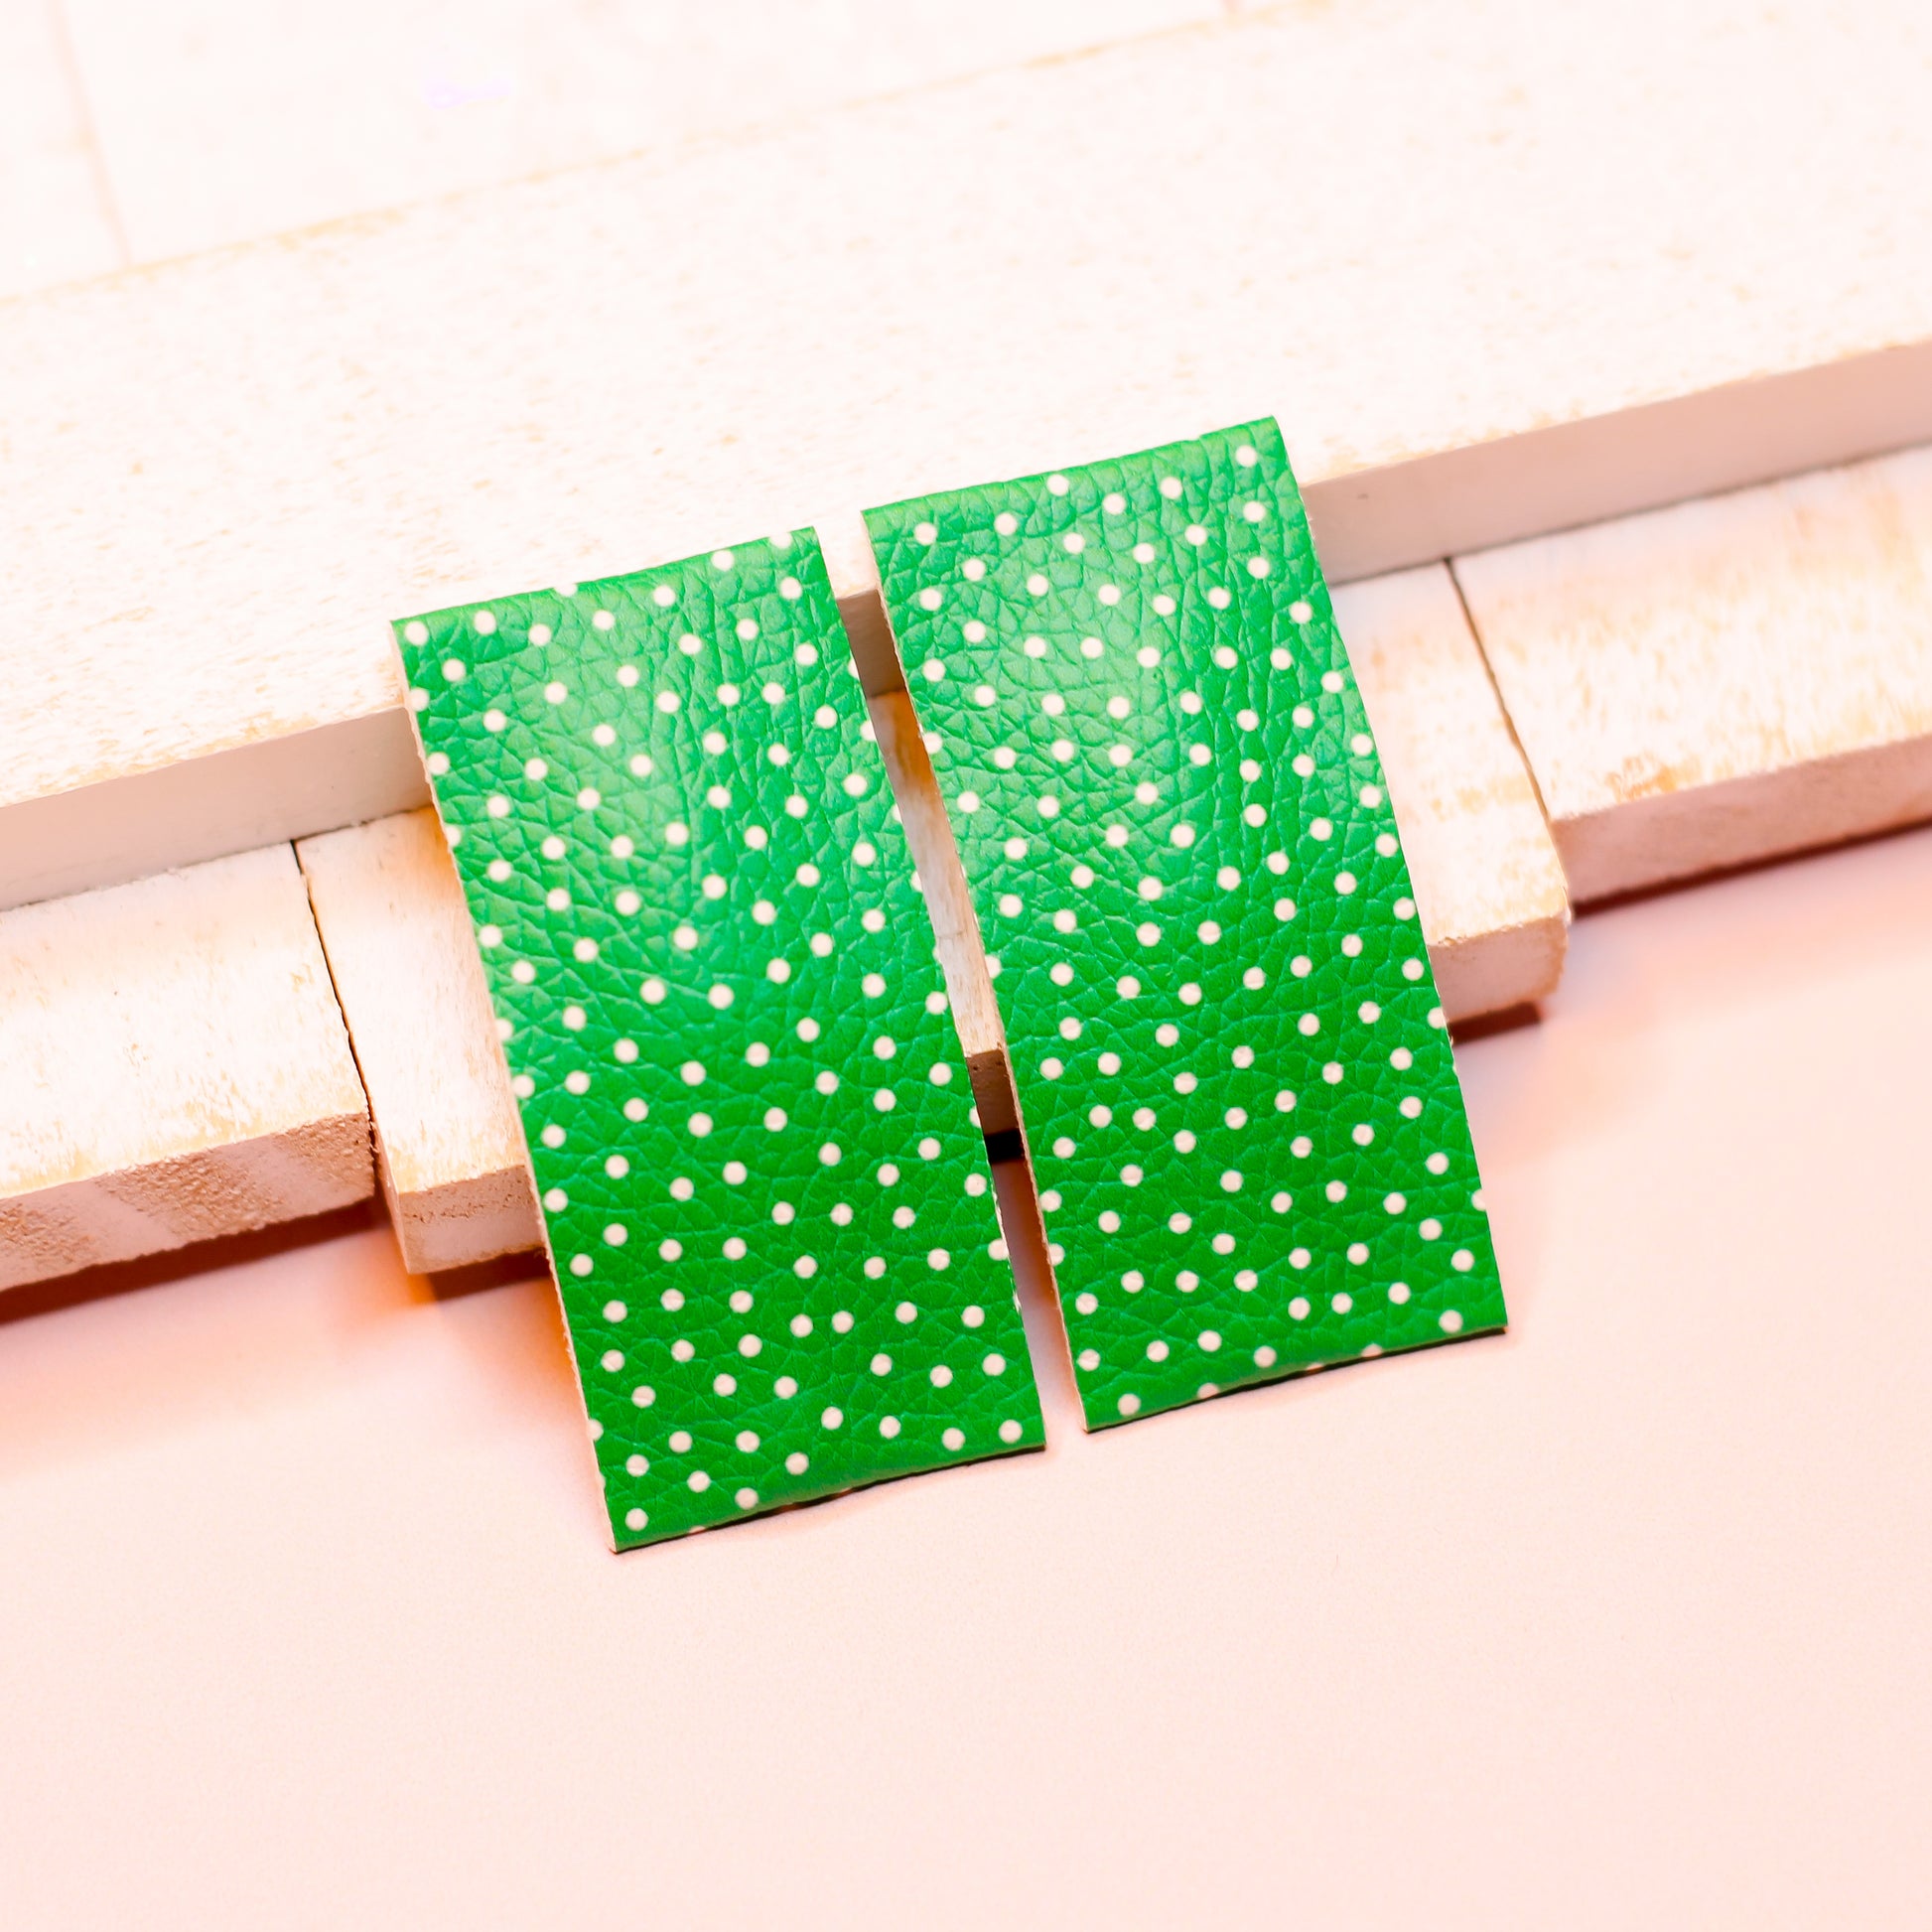 snap clip - green polka dots